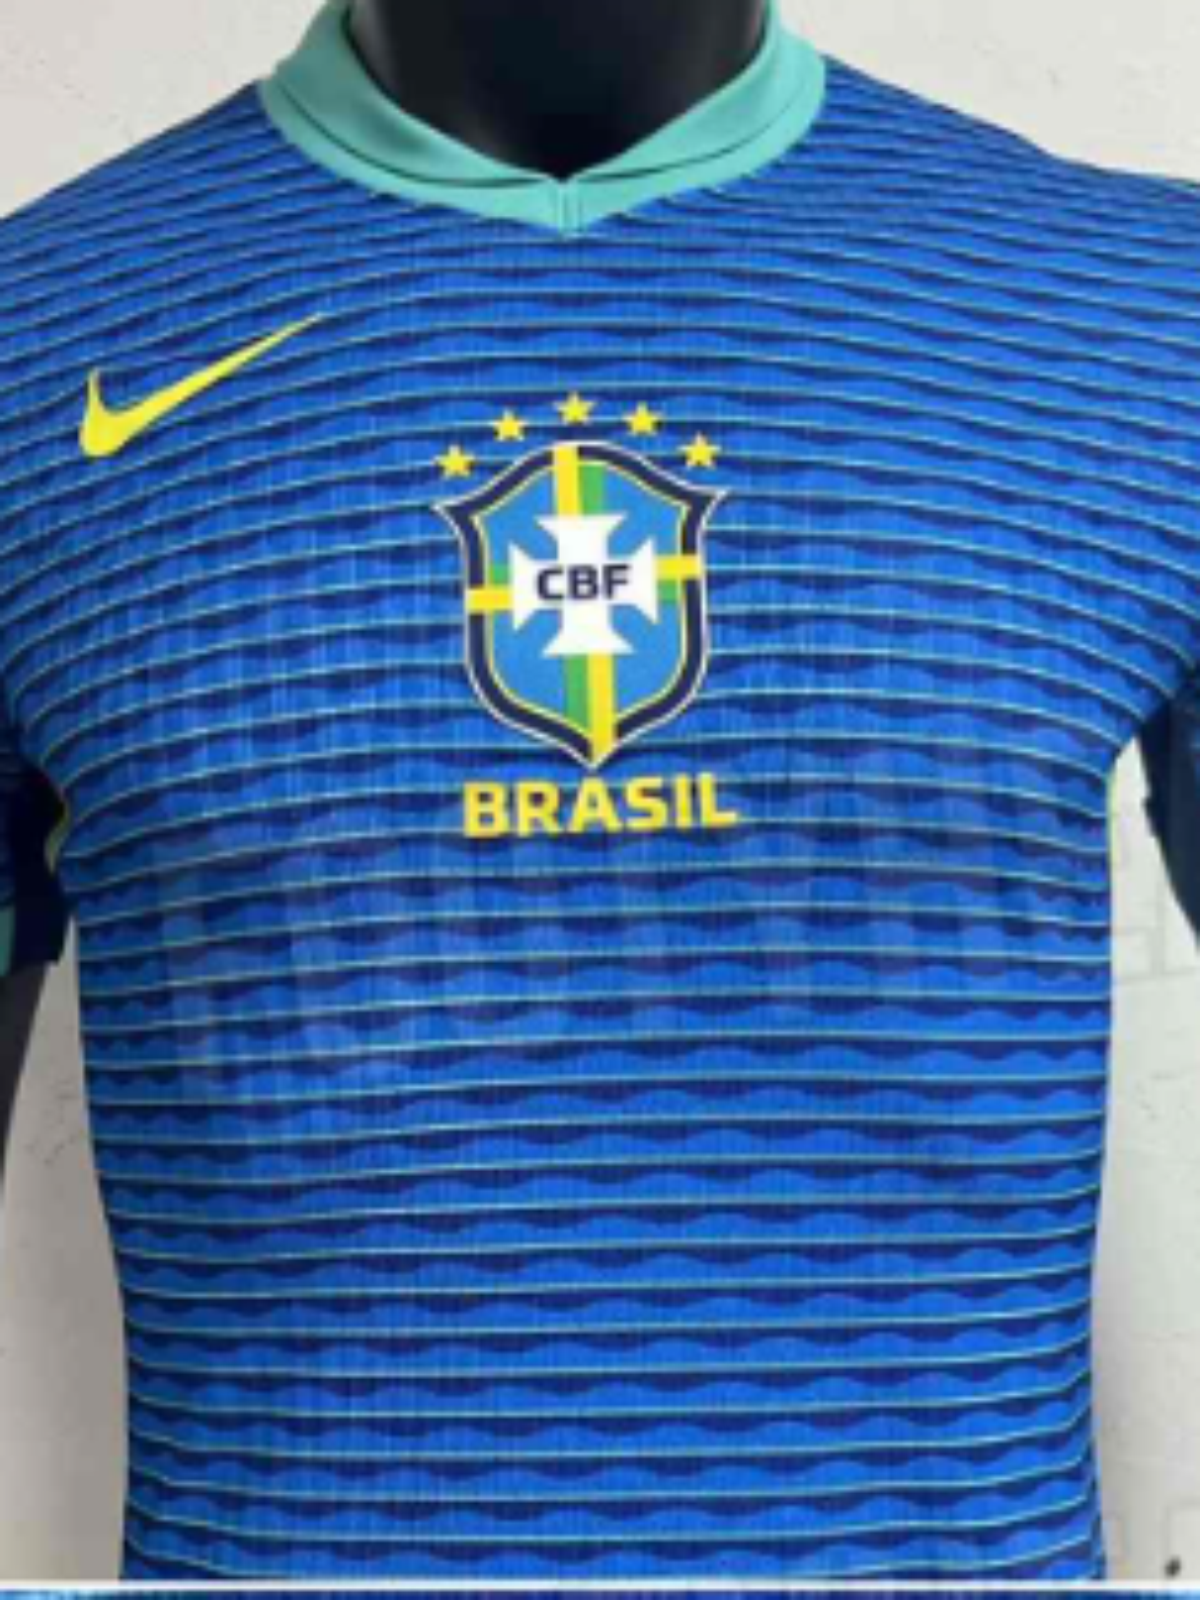 Site vaza suposta camisa 2 da Seleção Brasileira para 2024; veja fotos